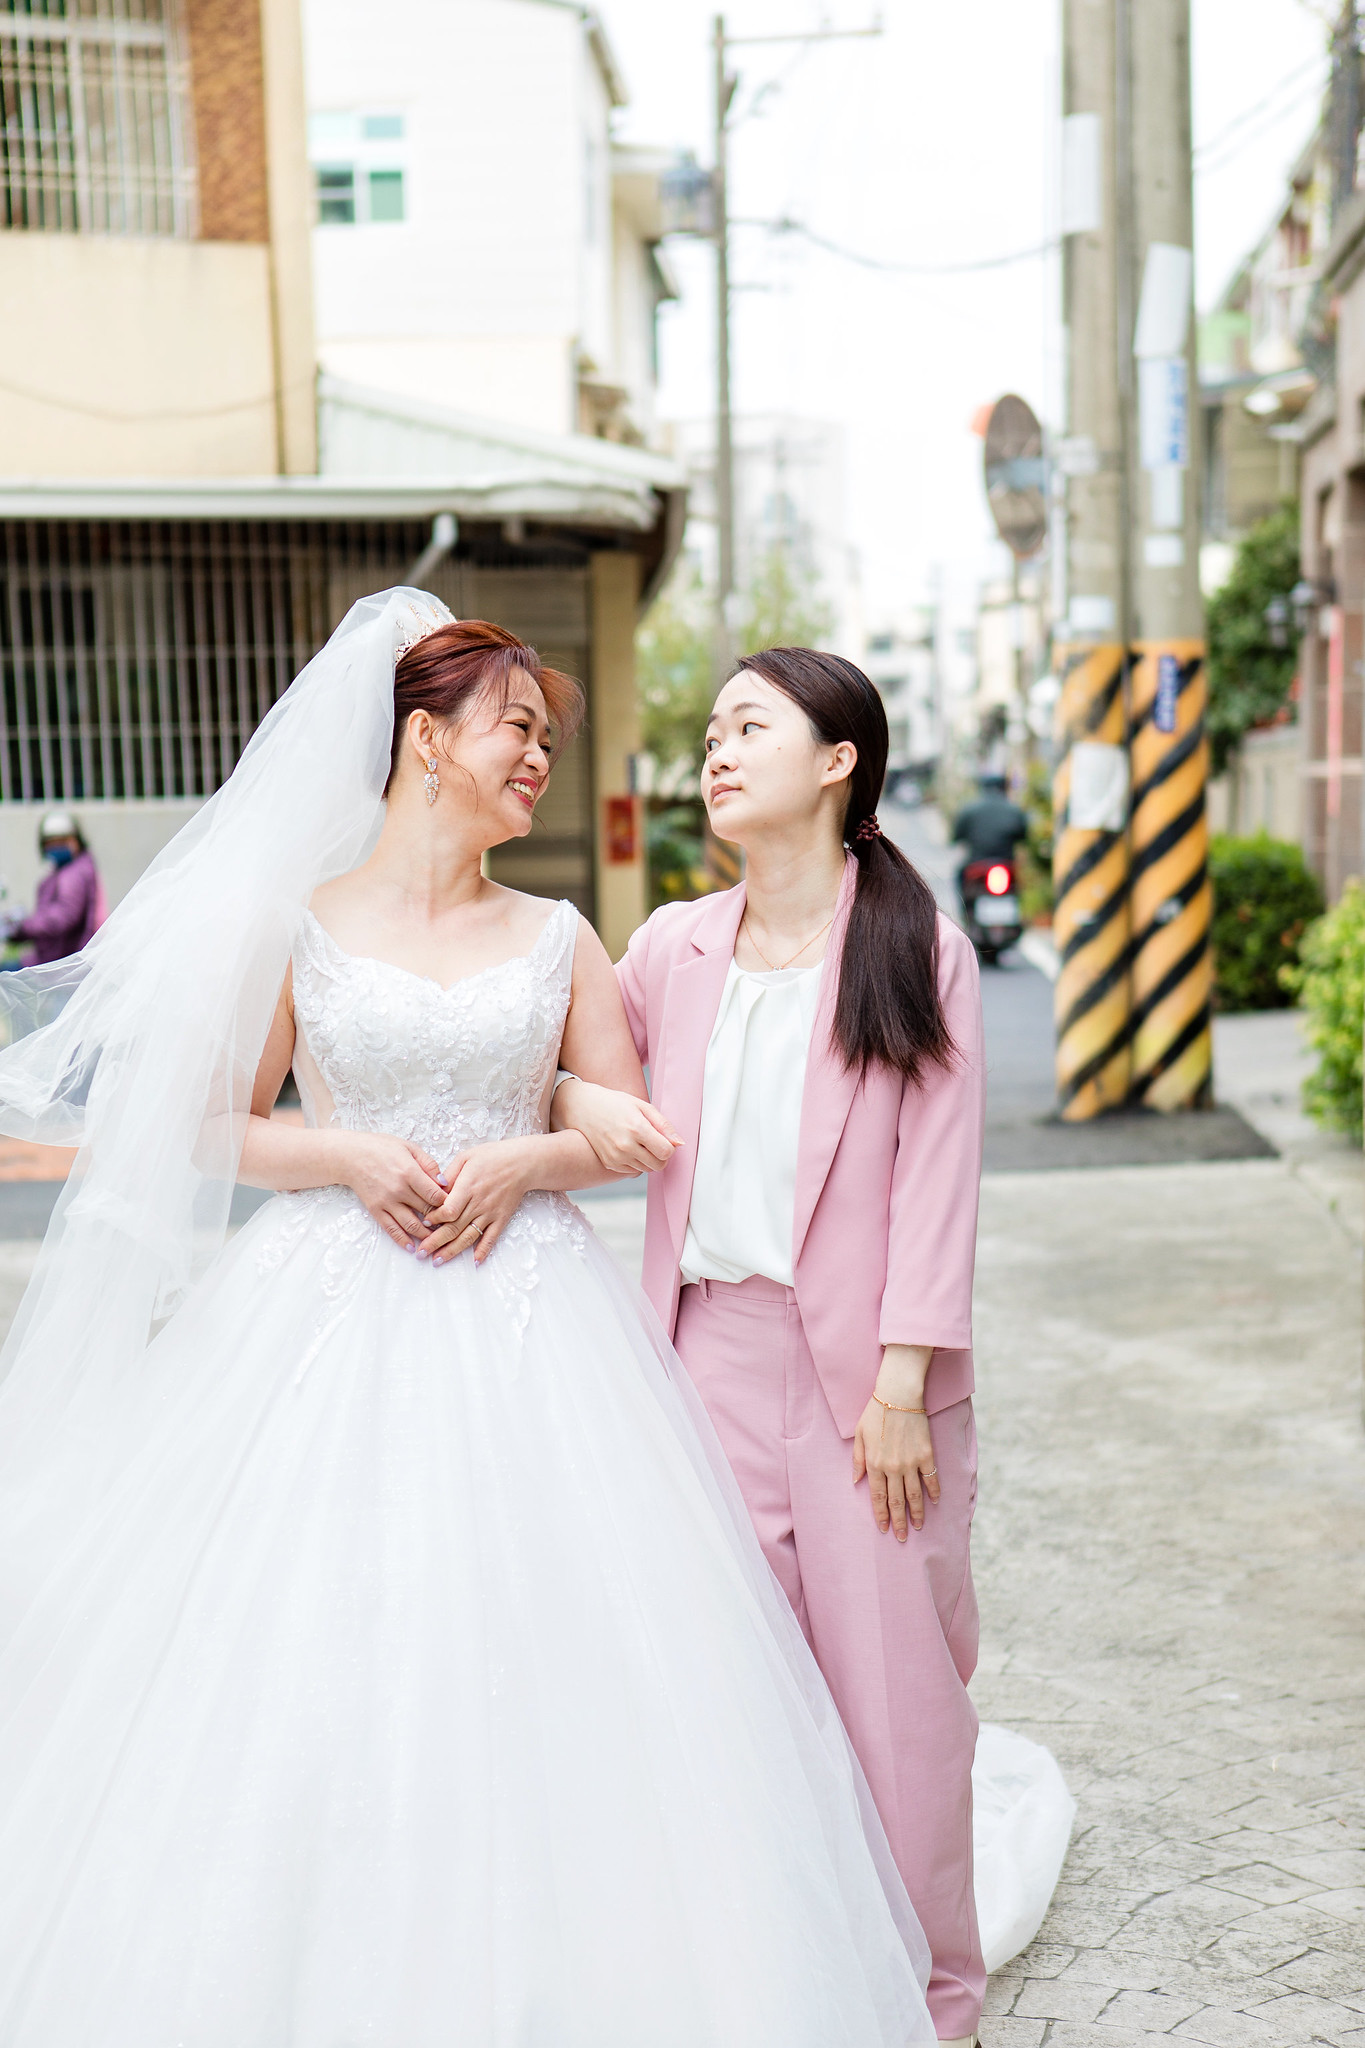 [婚攝] 榮貴 & 俞璇 | 自宅儀式搶先看 | 婚禮紀錄